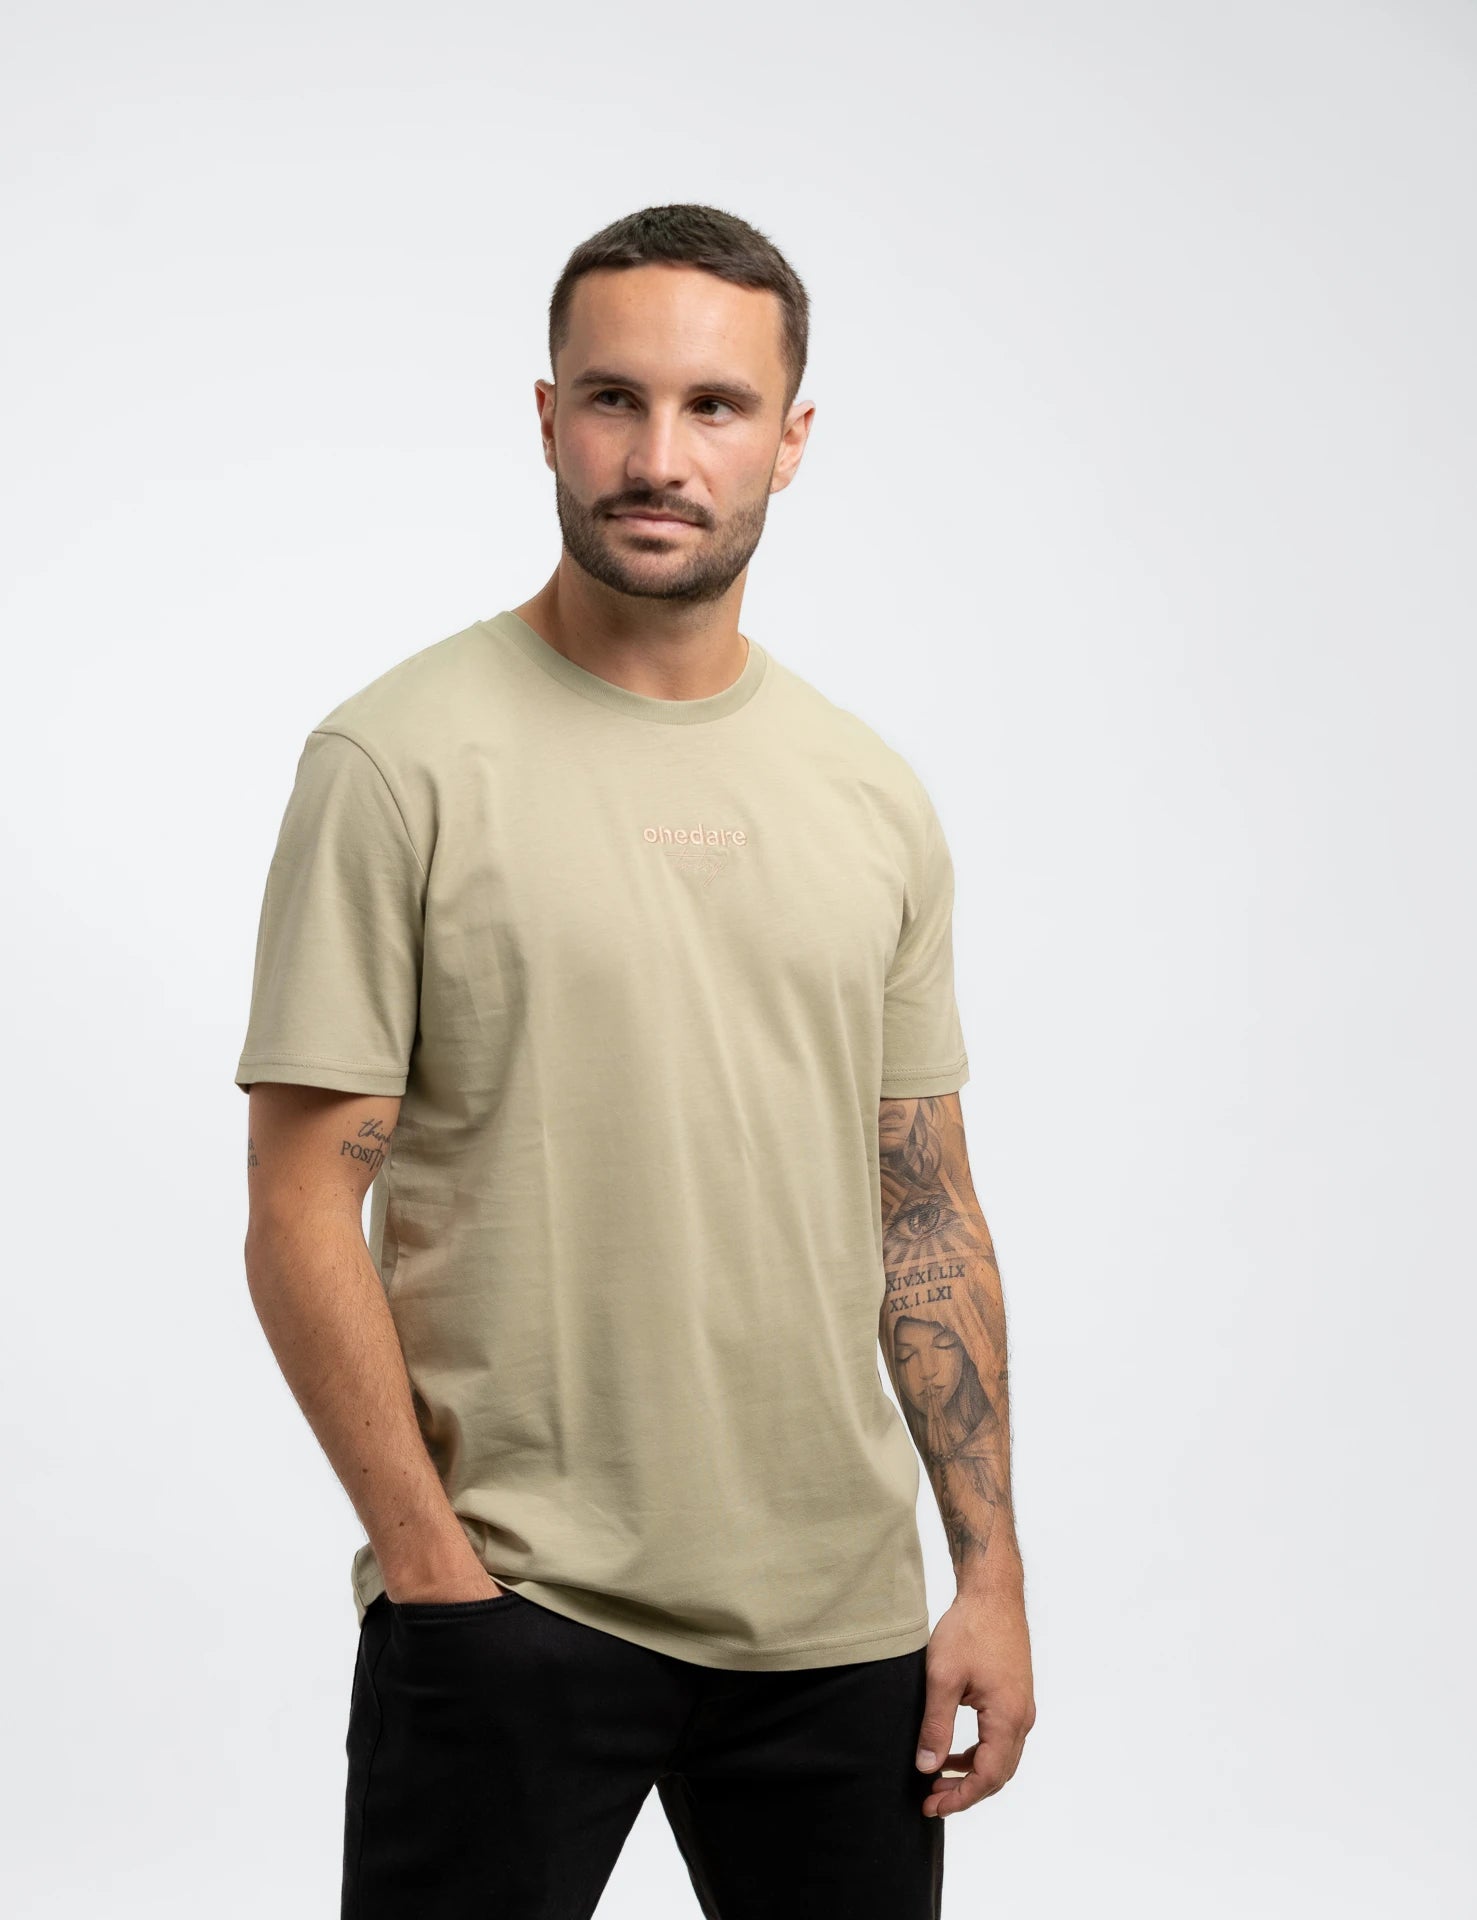 aus Onedare | sand Shirt Bio-Baumwolle T-Shirt classic try to